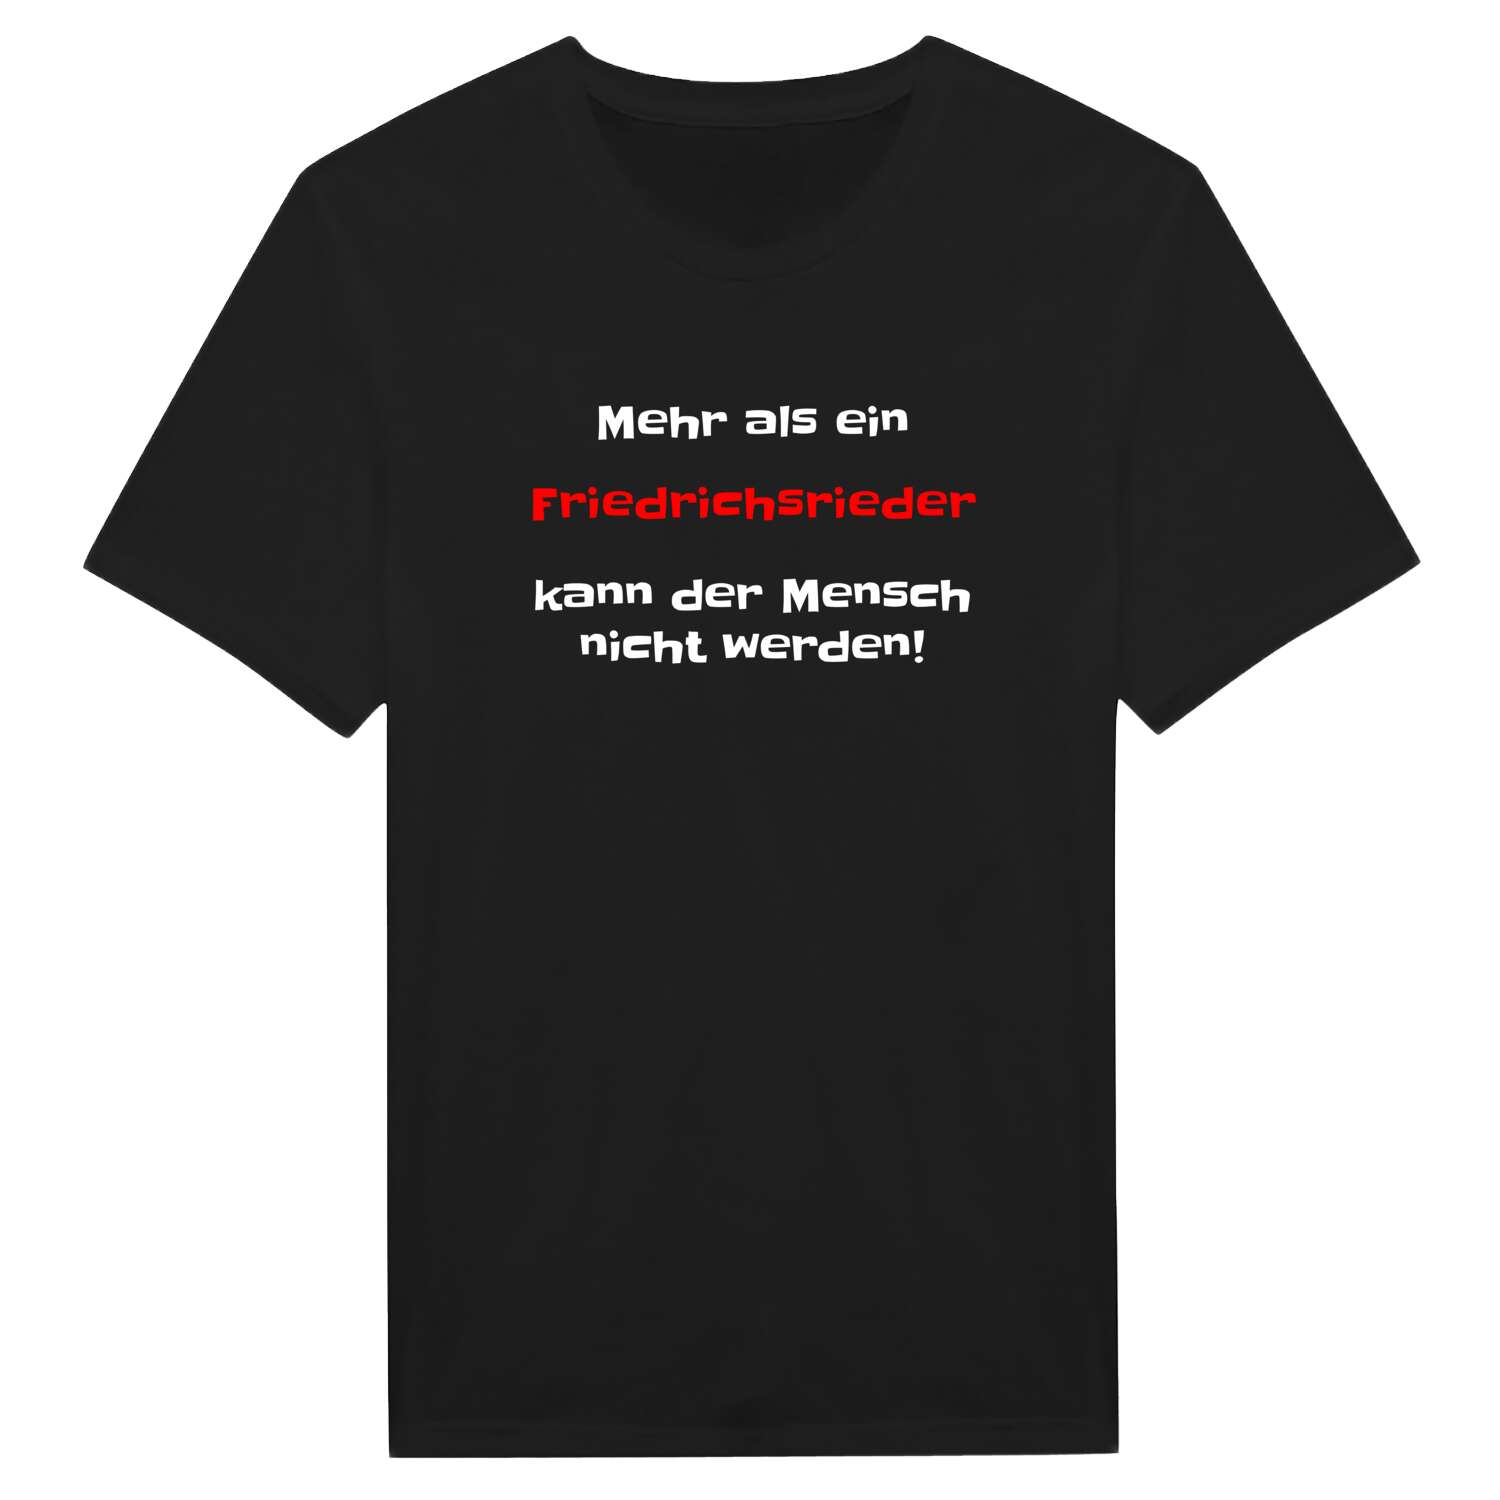 Friedrichsried T-Shirt »Mehr als ein«